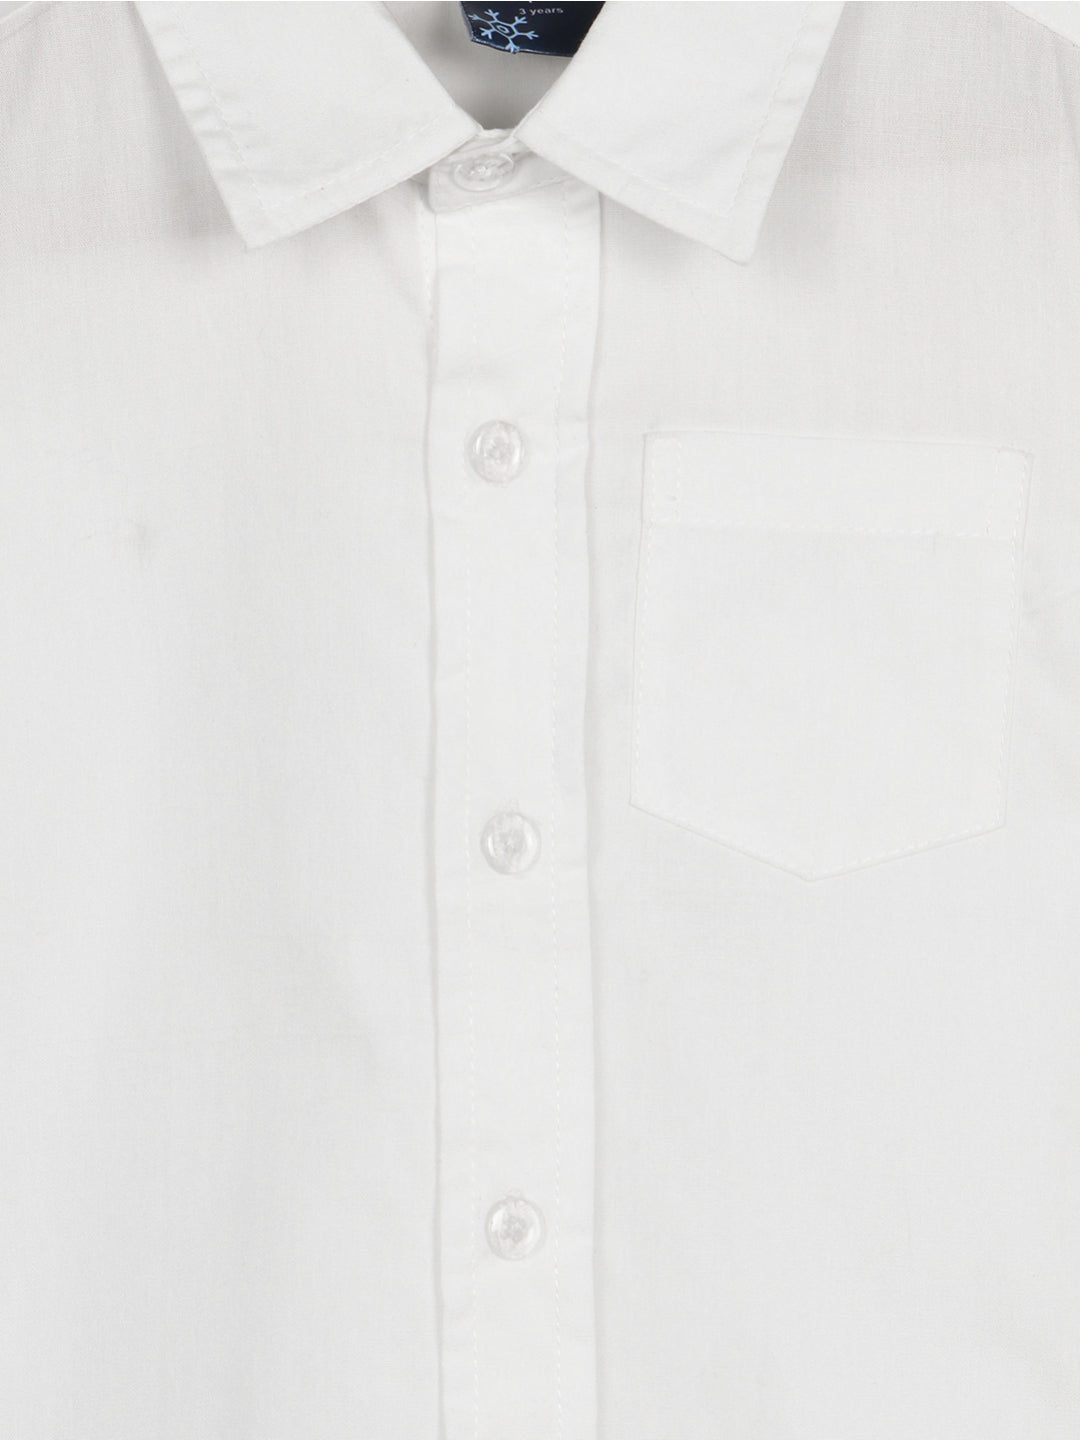 Nautinati Boys Self-Design Pure Cotton 4-Piece Single-Breasted Suit